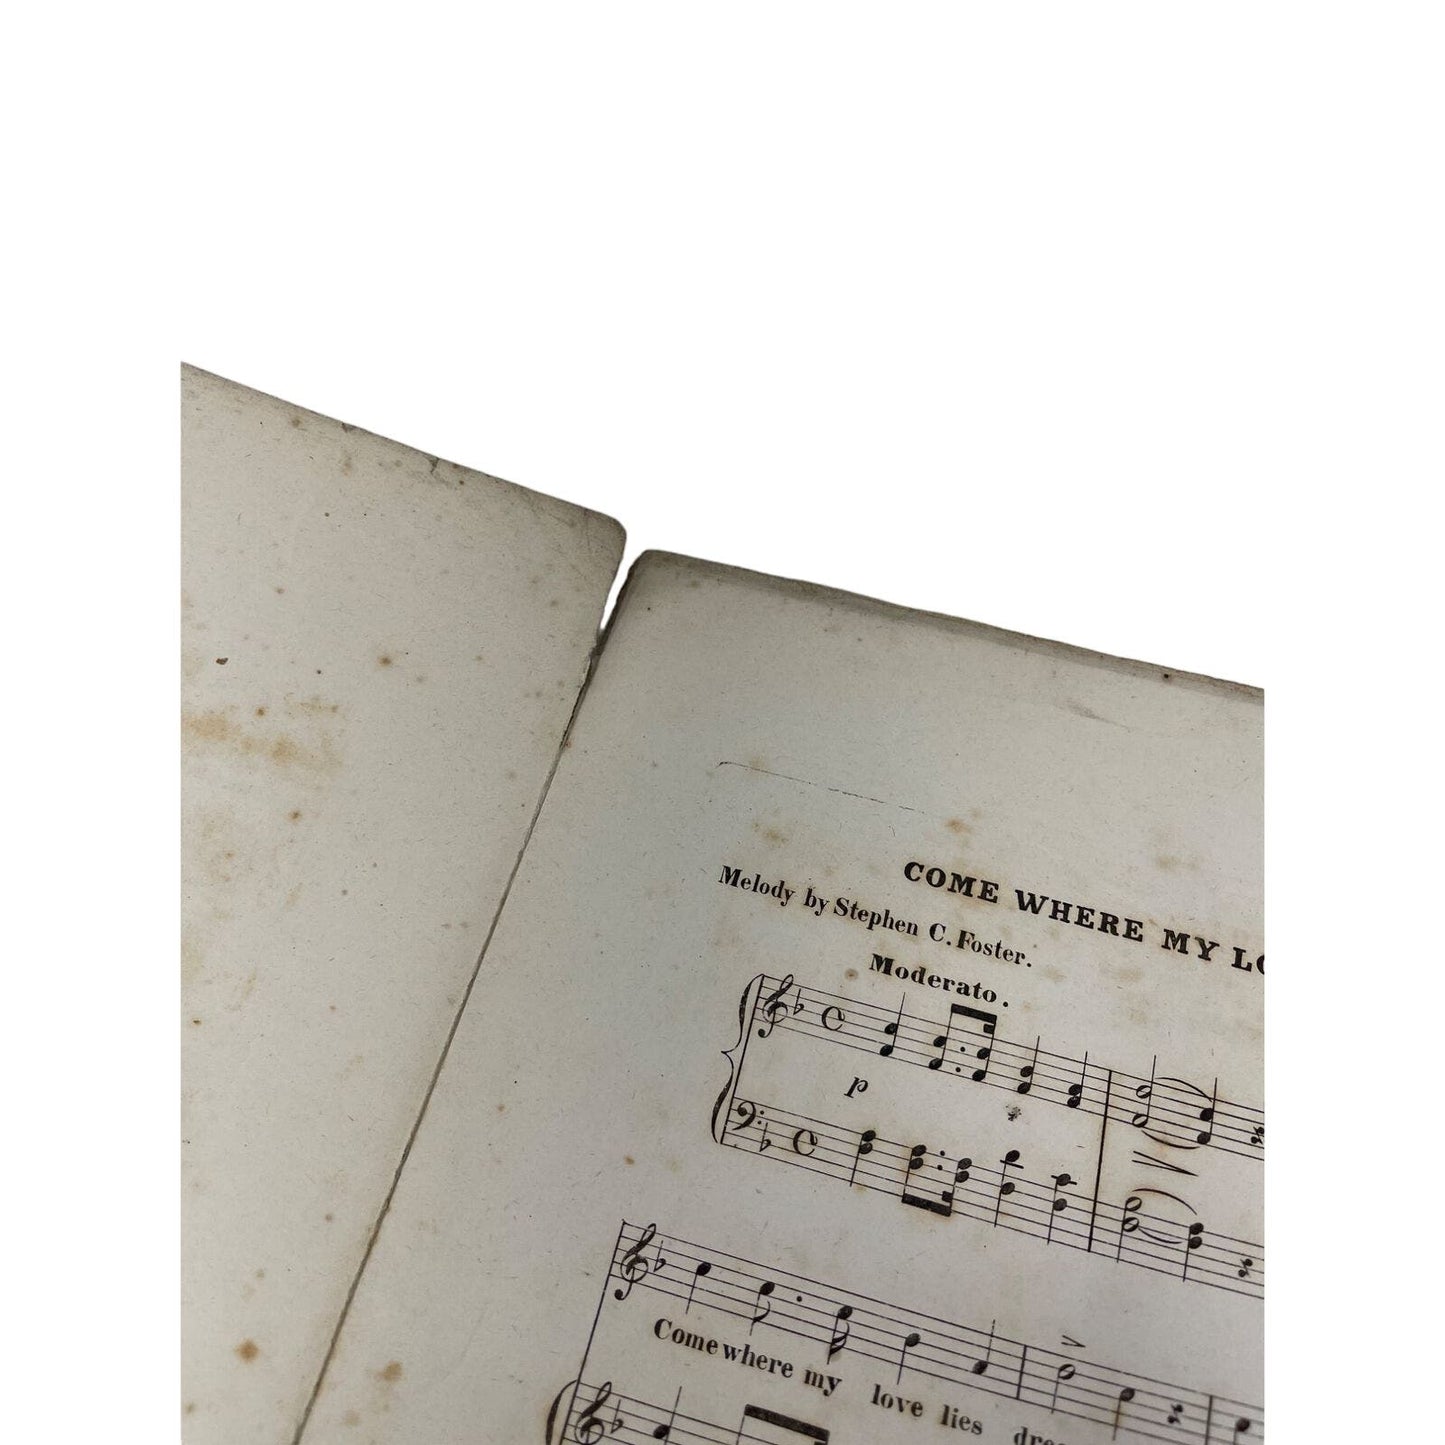 1862 Sheet Music Come Where My Love Lies Dreaming Stephan Foster Wm Dressler